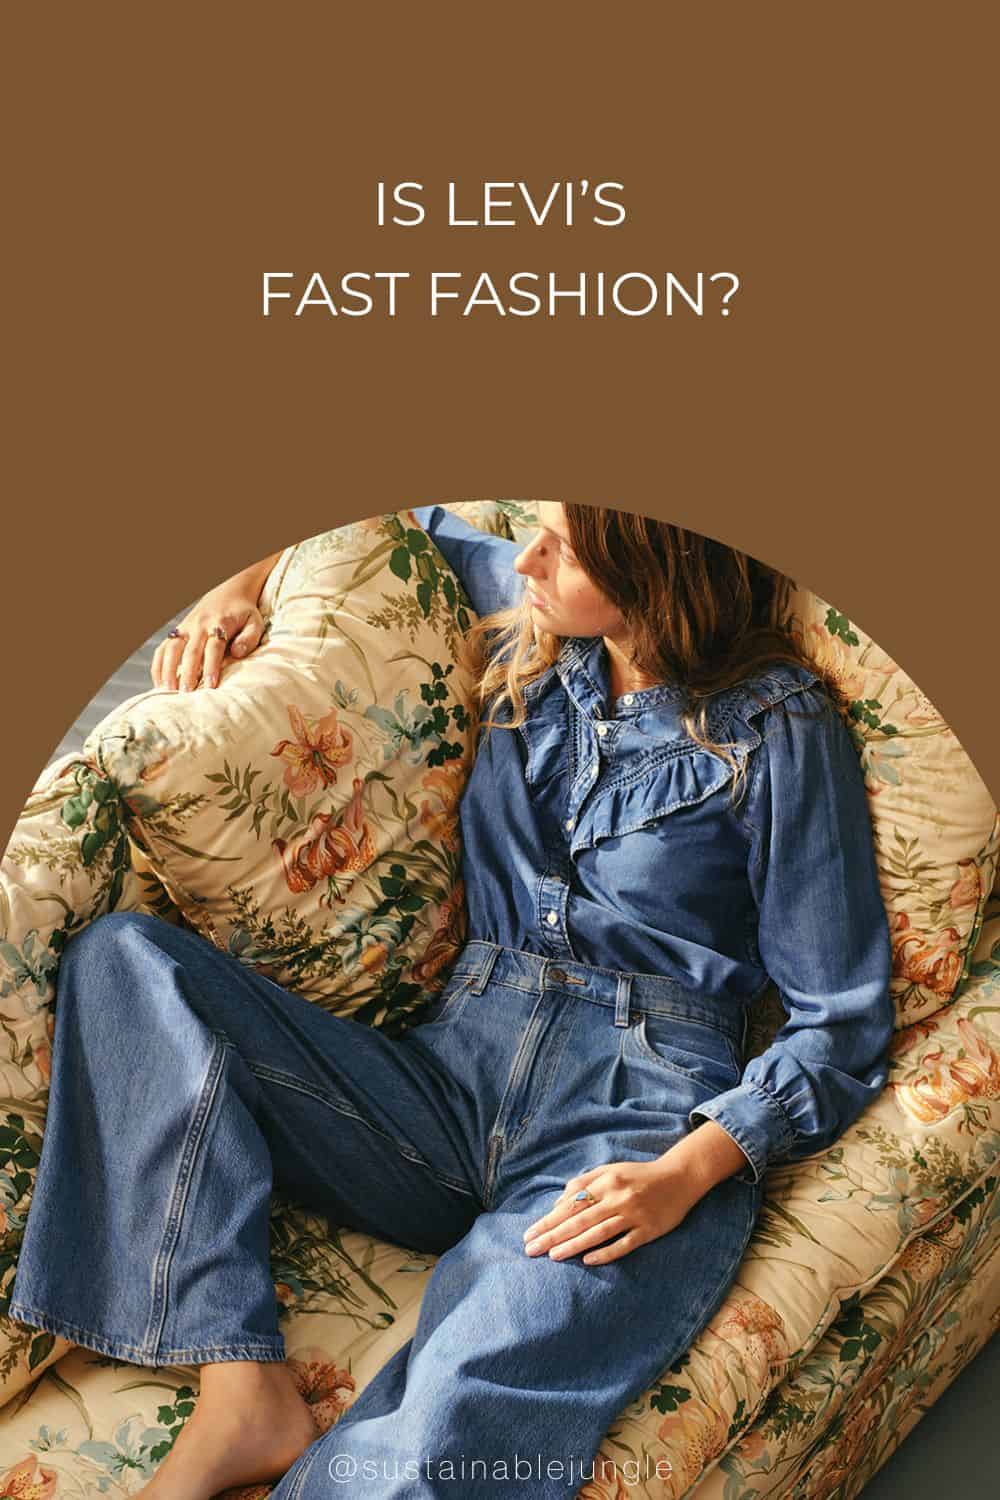 Is Levi’s Fast Fashion? Image by Levi's #islevisfastfashion #islevisethical #Levissustainability #howethicalislevis #islevissustainable #sustainablejungle